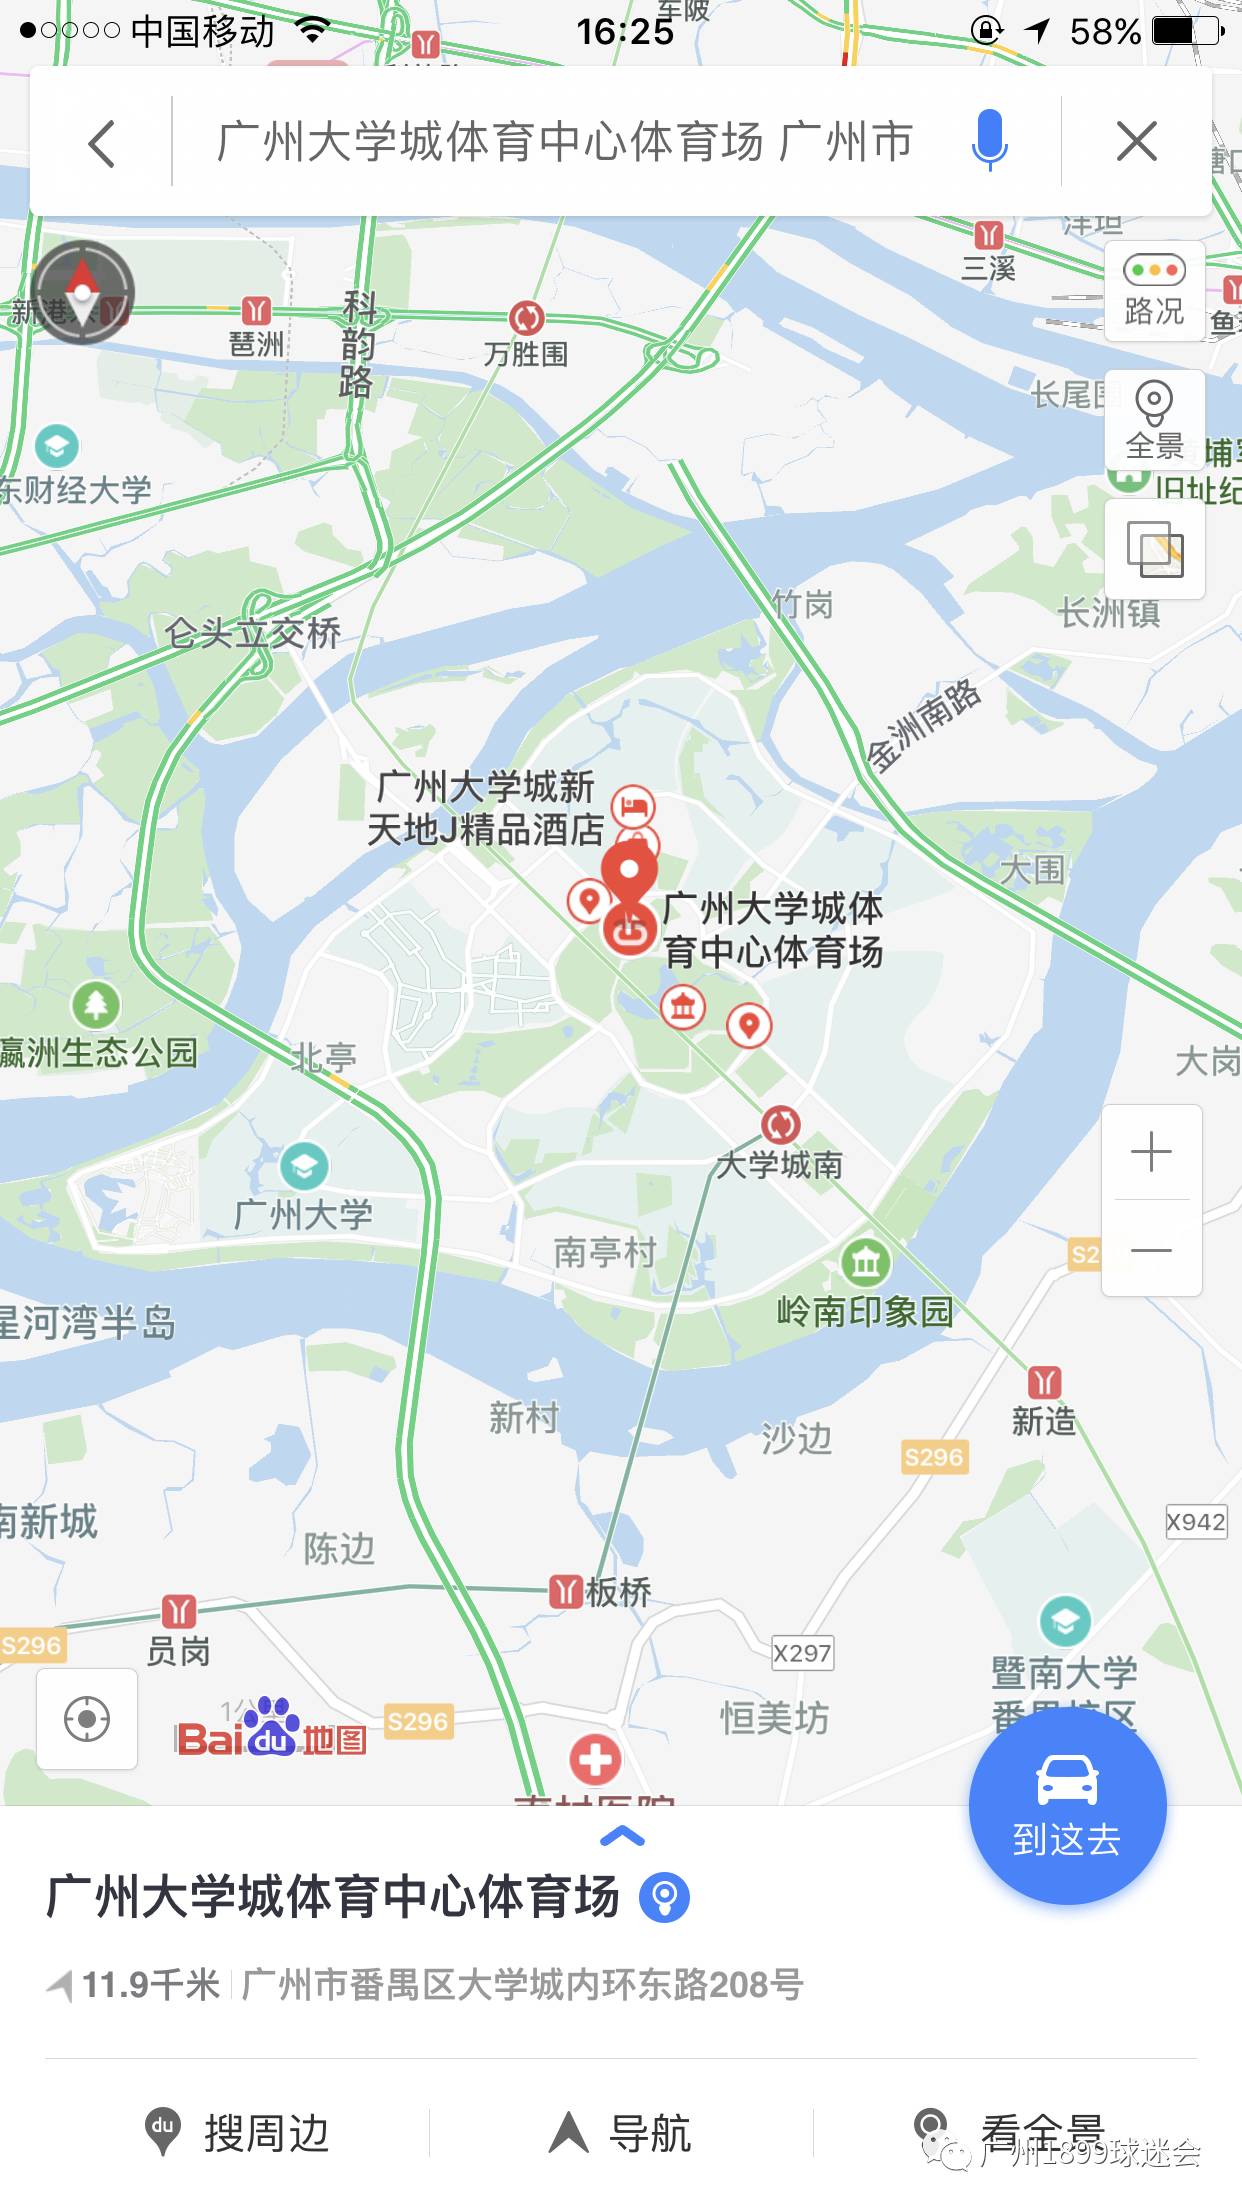 番禺大学城地图图片